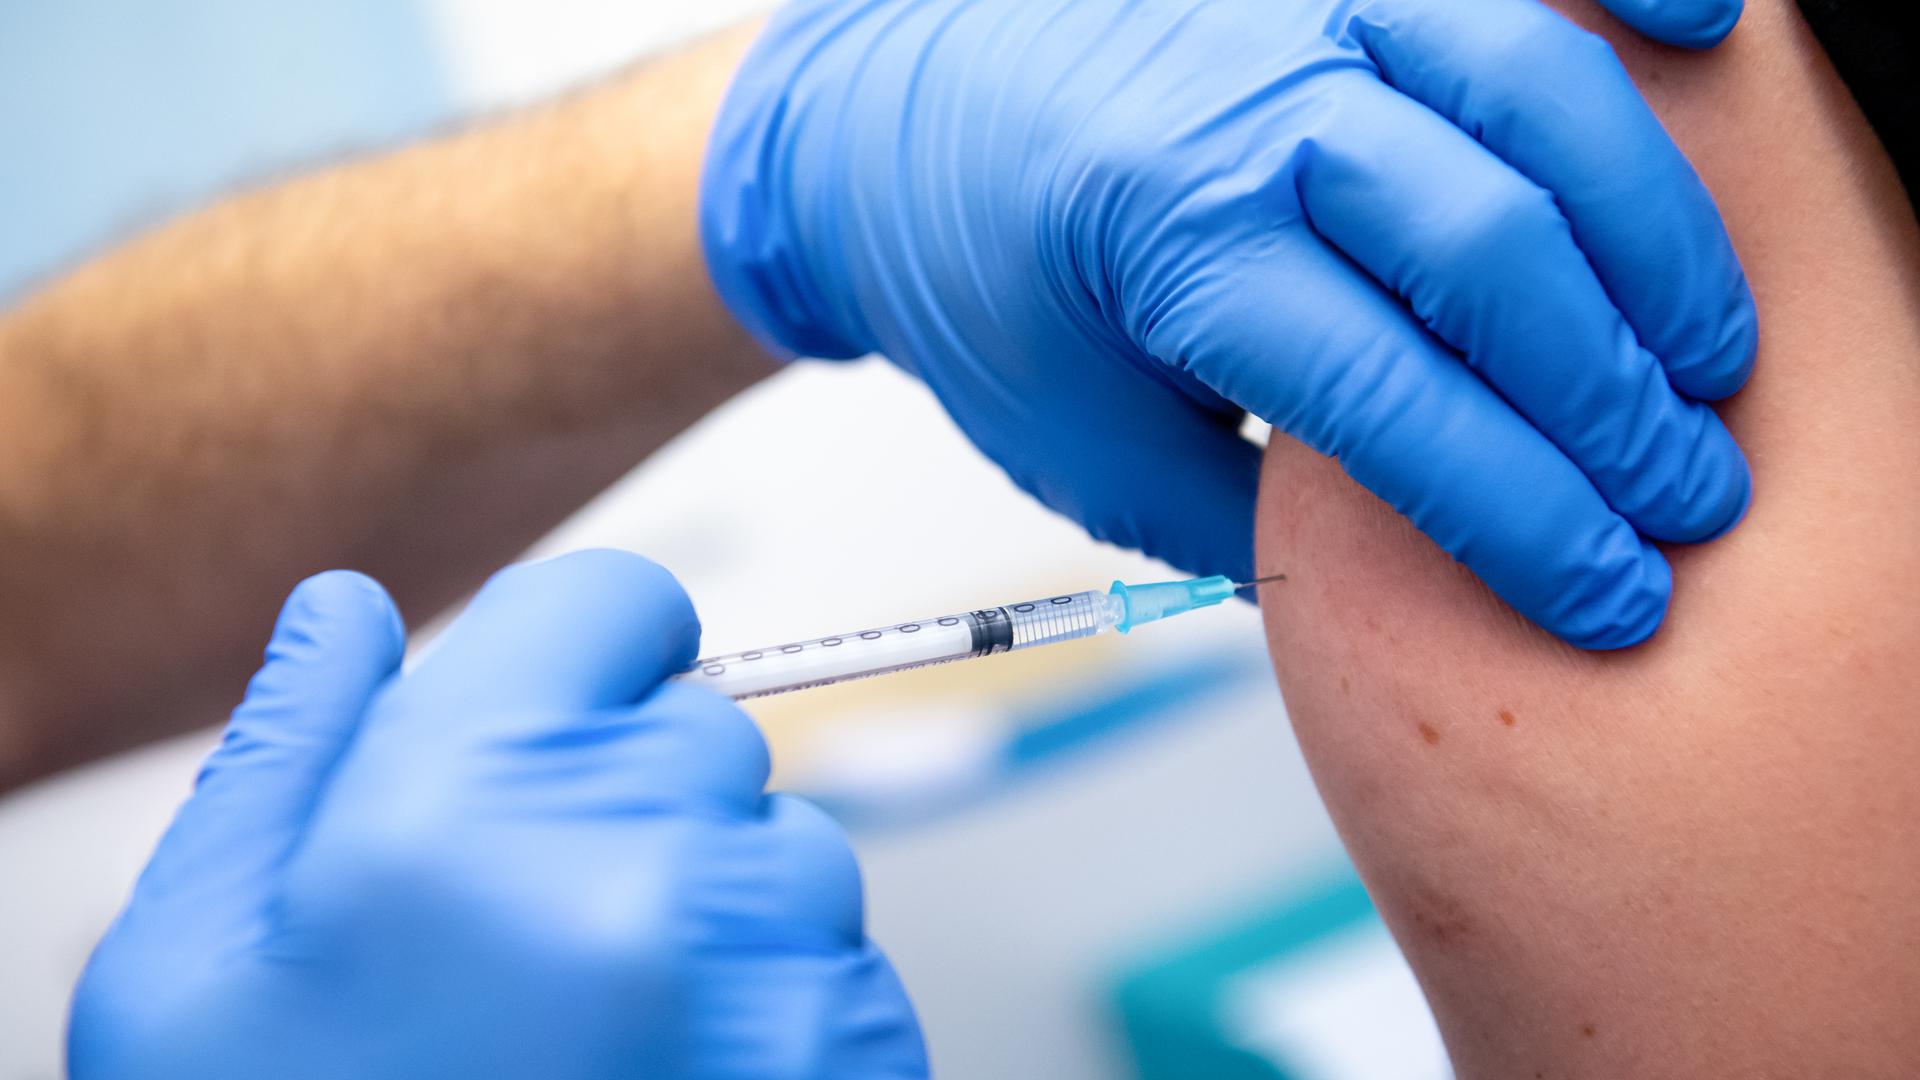 Ein Mitarbeiter der Asklepios Klinik wird von einem Kollegen mit dem Corona-Impfstoff von Biontech/Pfizer geimpft. Zahlreiche Mitarbeiter der Klinik haben sich gegen das Coronavirus impfen lassen. +++ dpa-Bildfunk +++